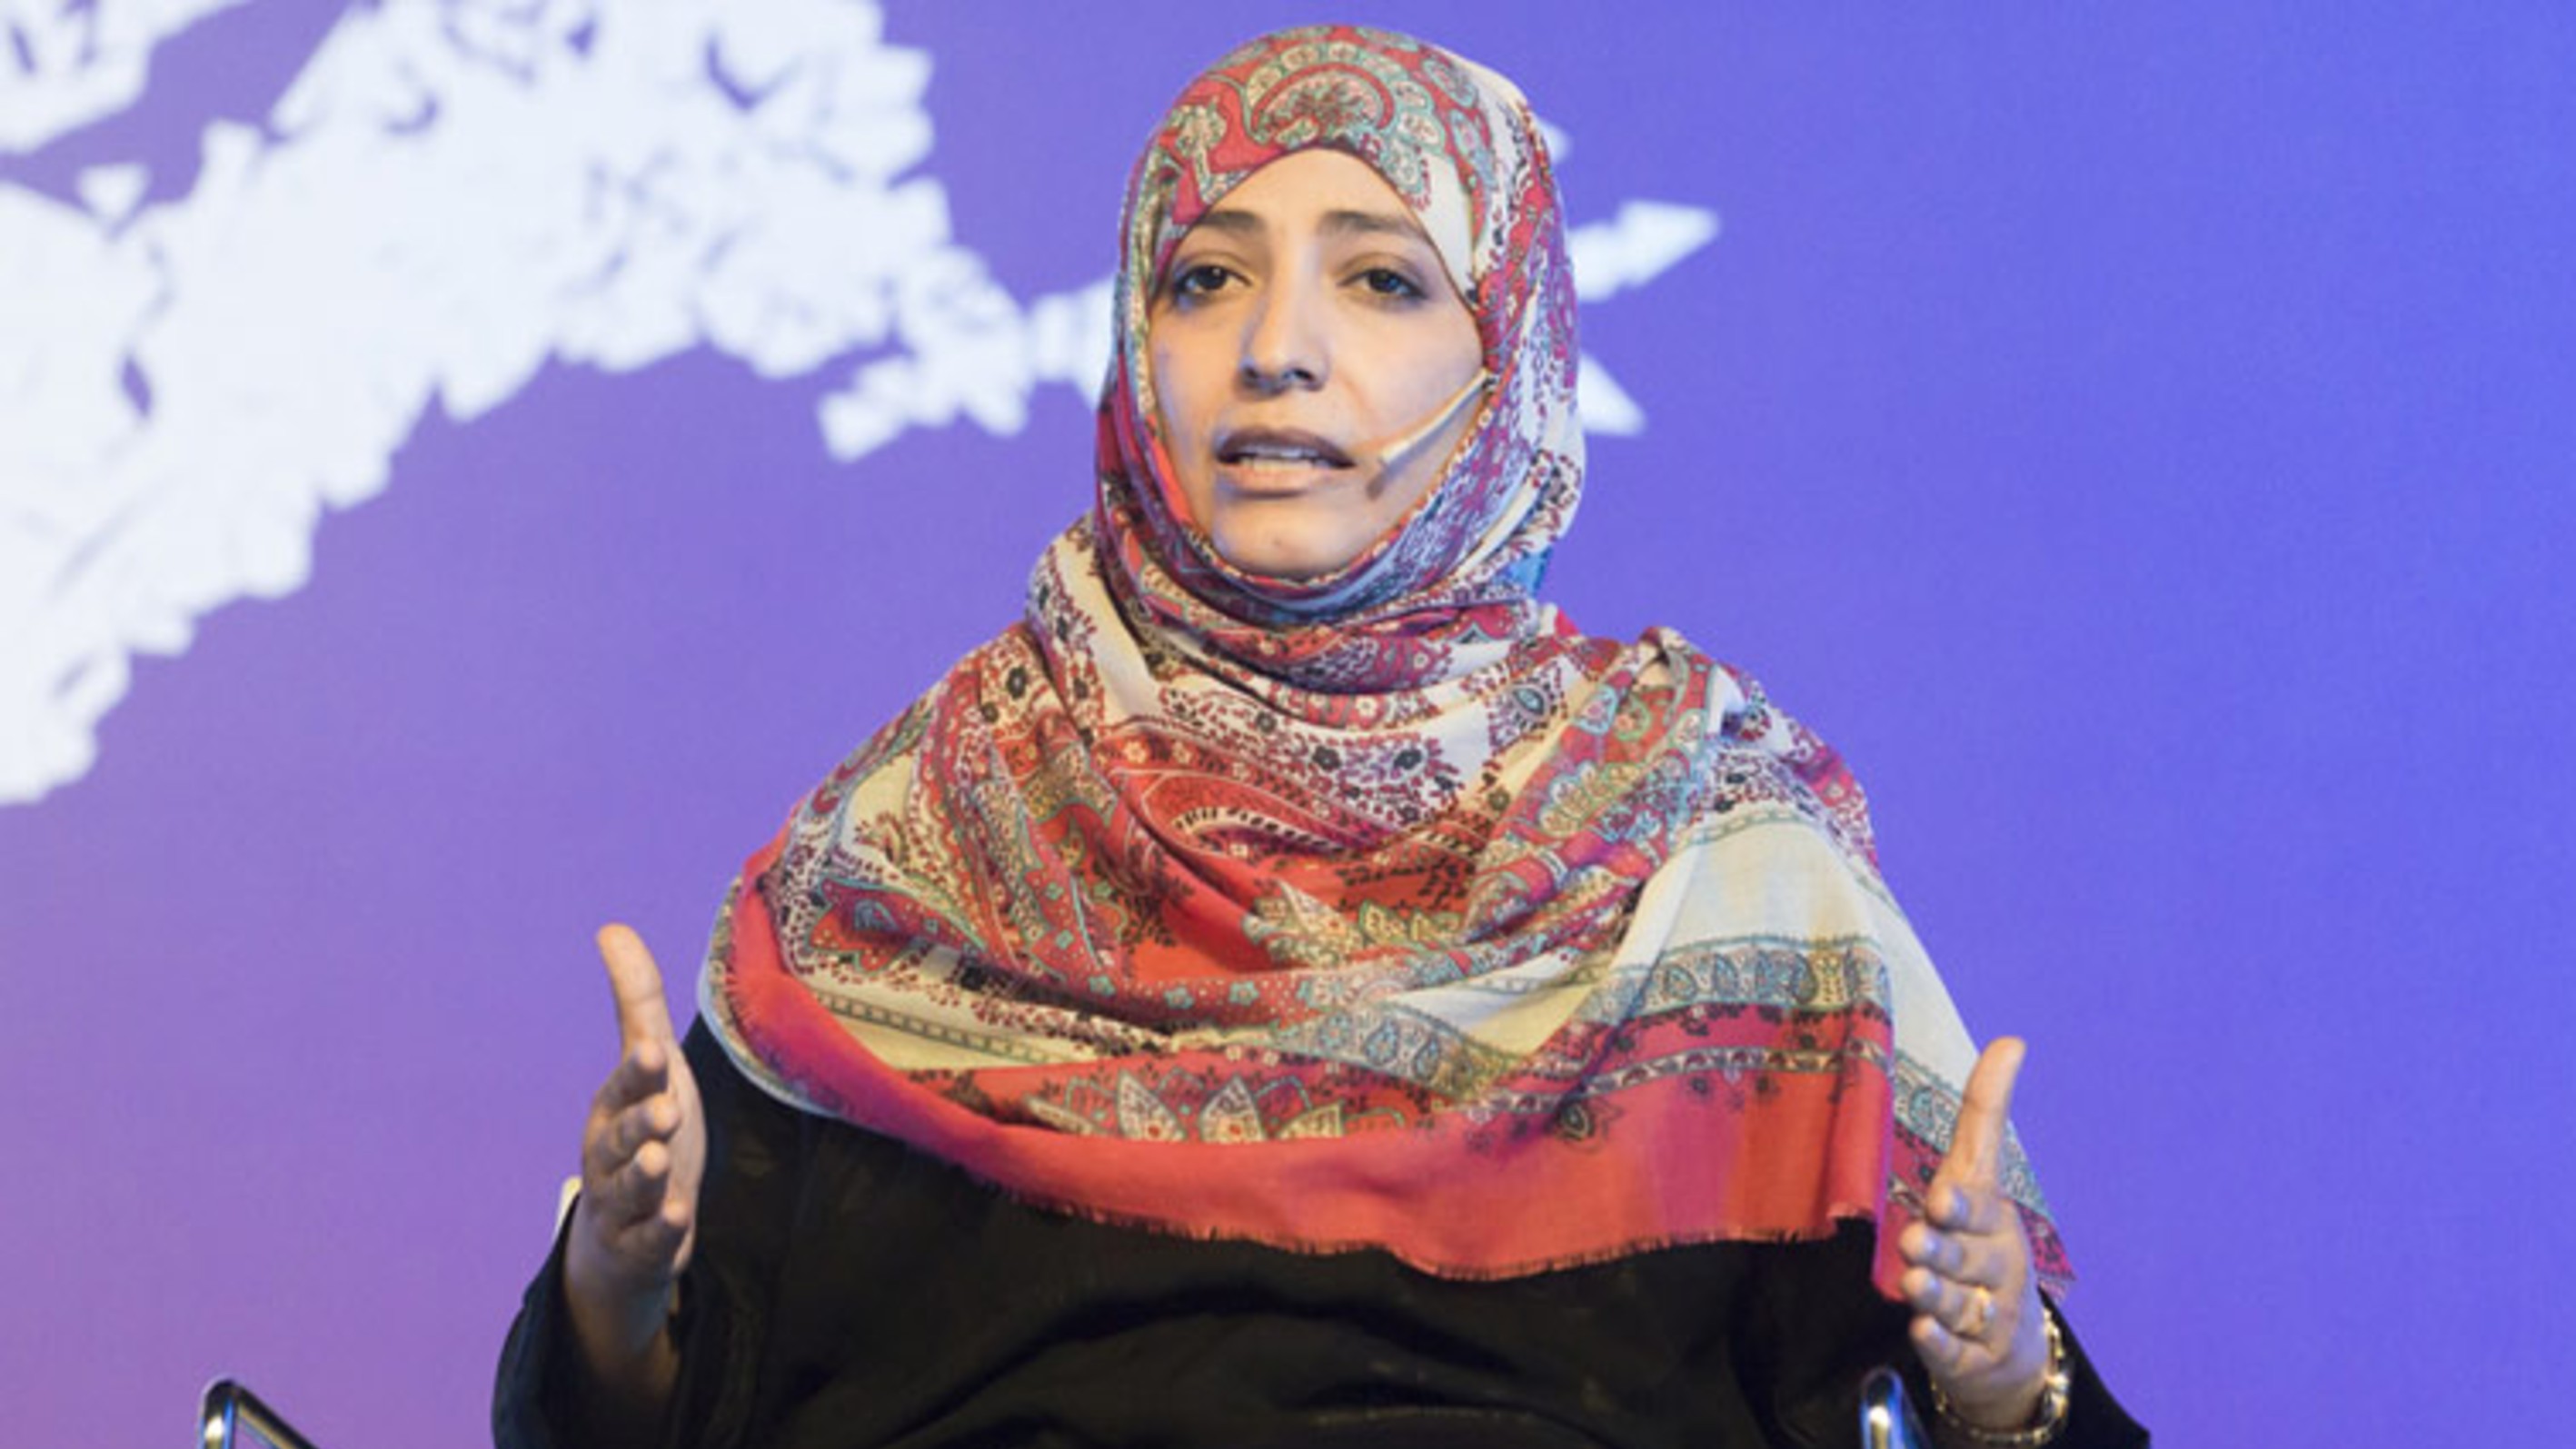 حوار الناشطة الحائزة على جائزة نوبل للسلام توكل كرمان مع صحيفة الرياض السعودية